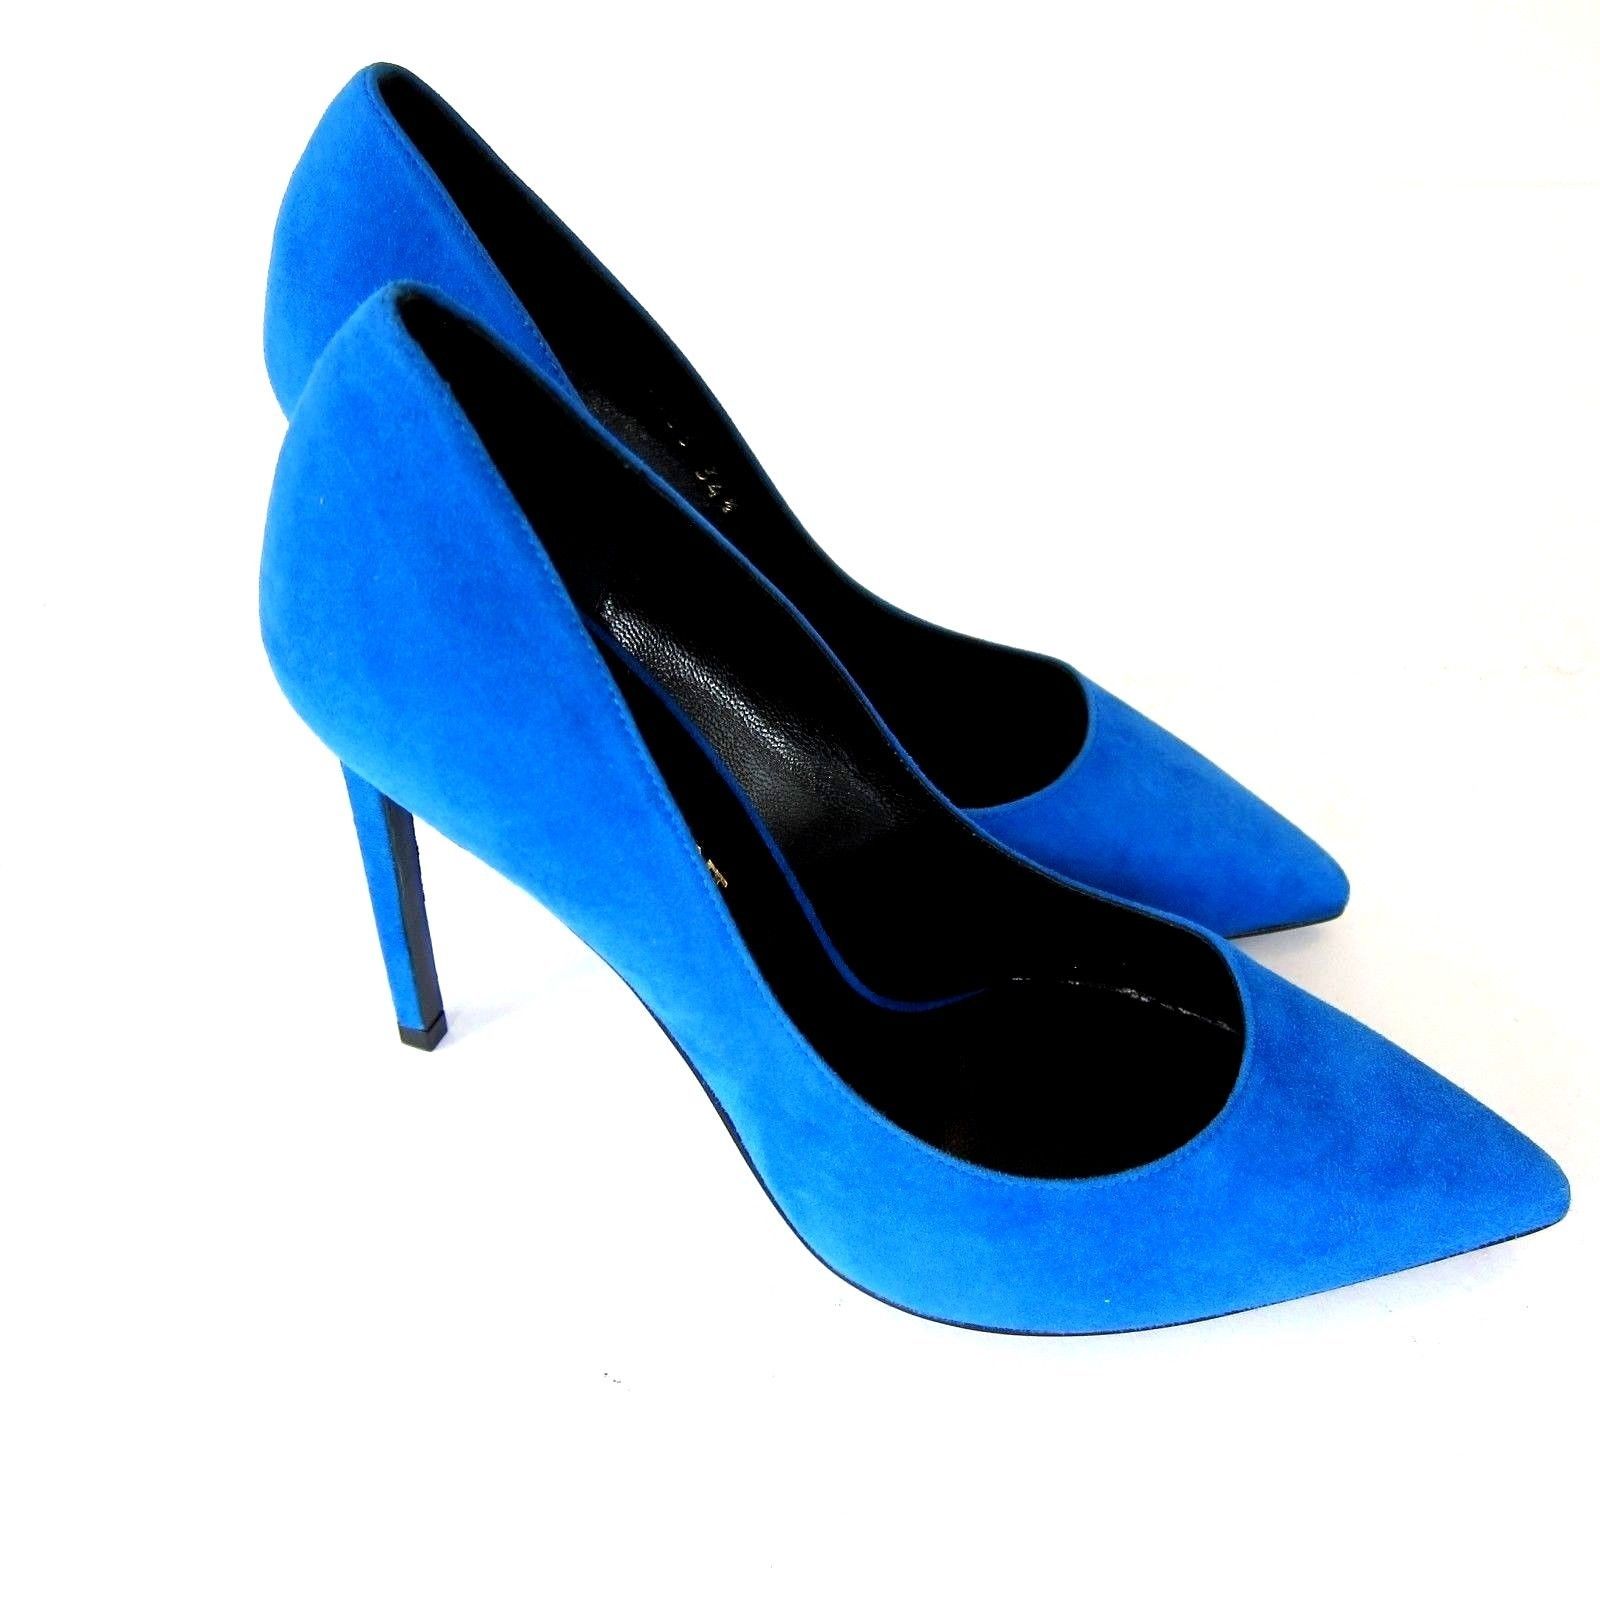 J-3325139 New Saint Laurent Electric Blue High Heels Pump Shoes Size US ...